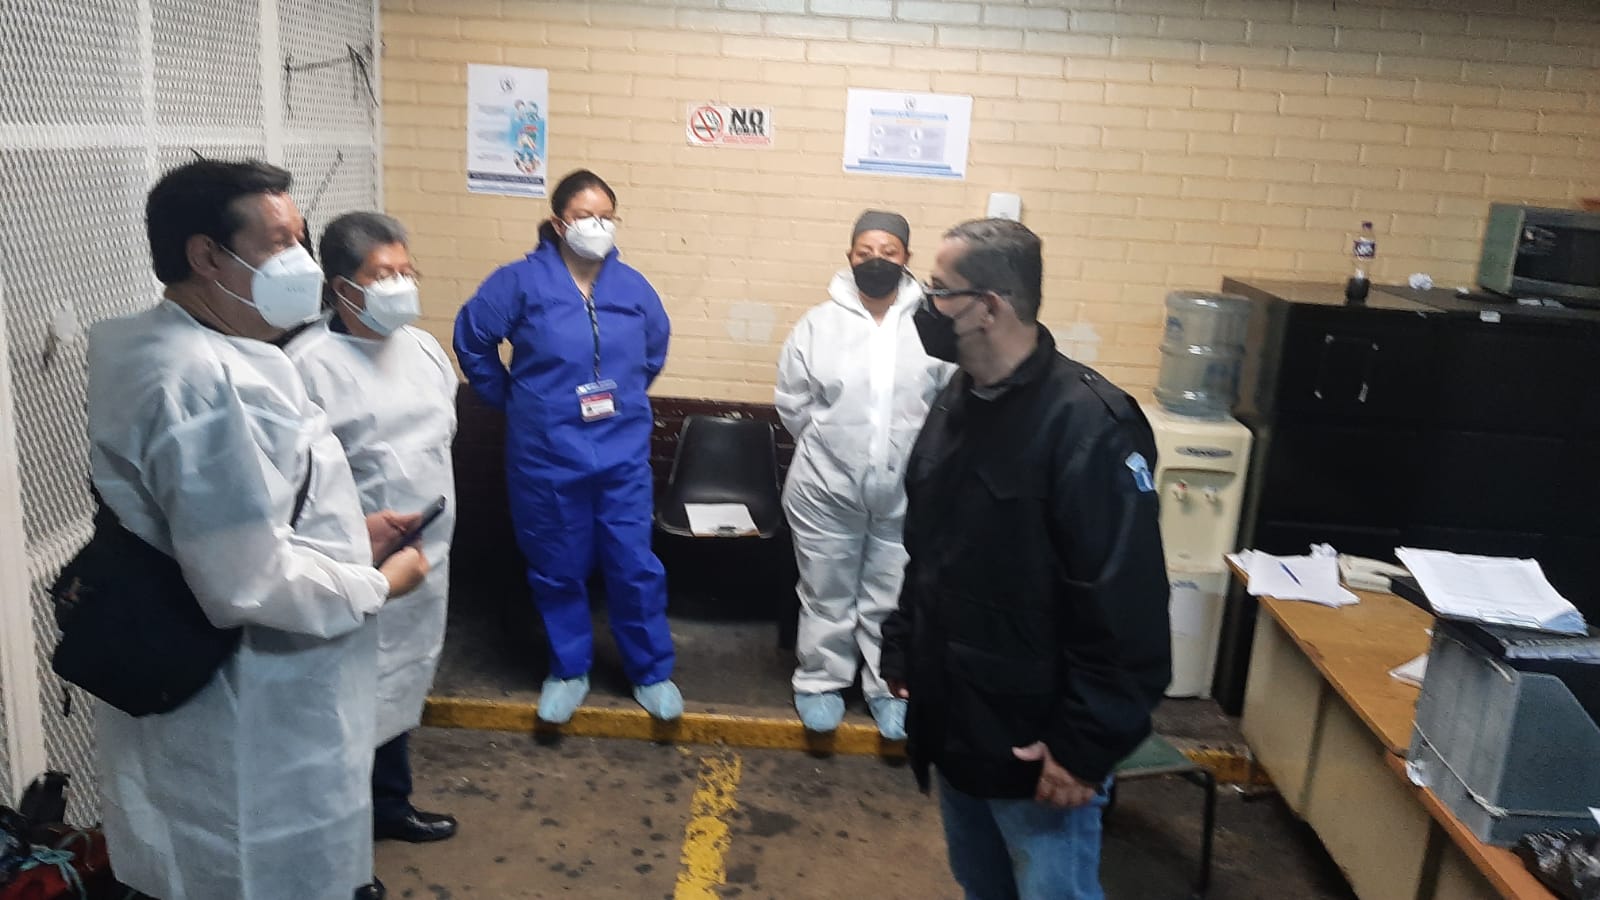 Autoridades penitenciarias supervisan carceletas en Torre de Tribunales para evitar contagios de COVID-19 por hacinamiento derivado de múltiples capturas